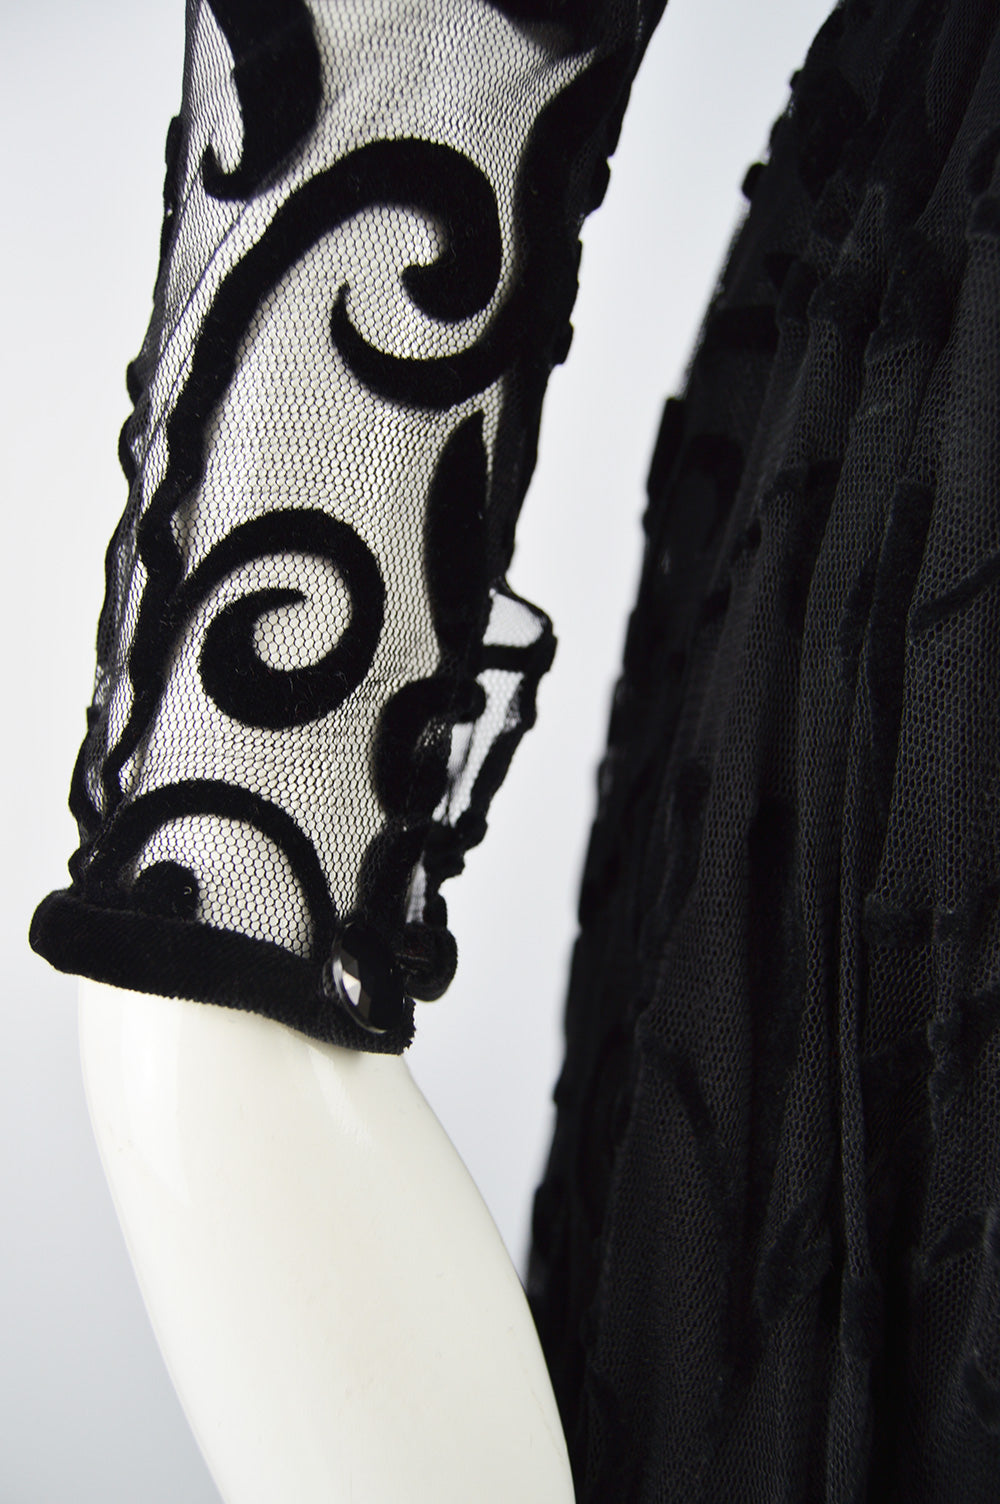 Vintage Black Tulle & Velvet Evening Gown, Fall 1993